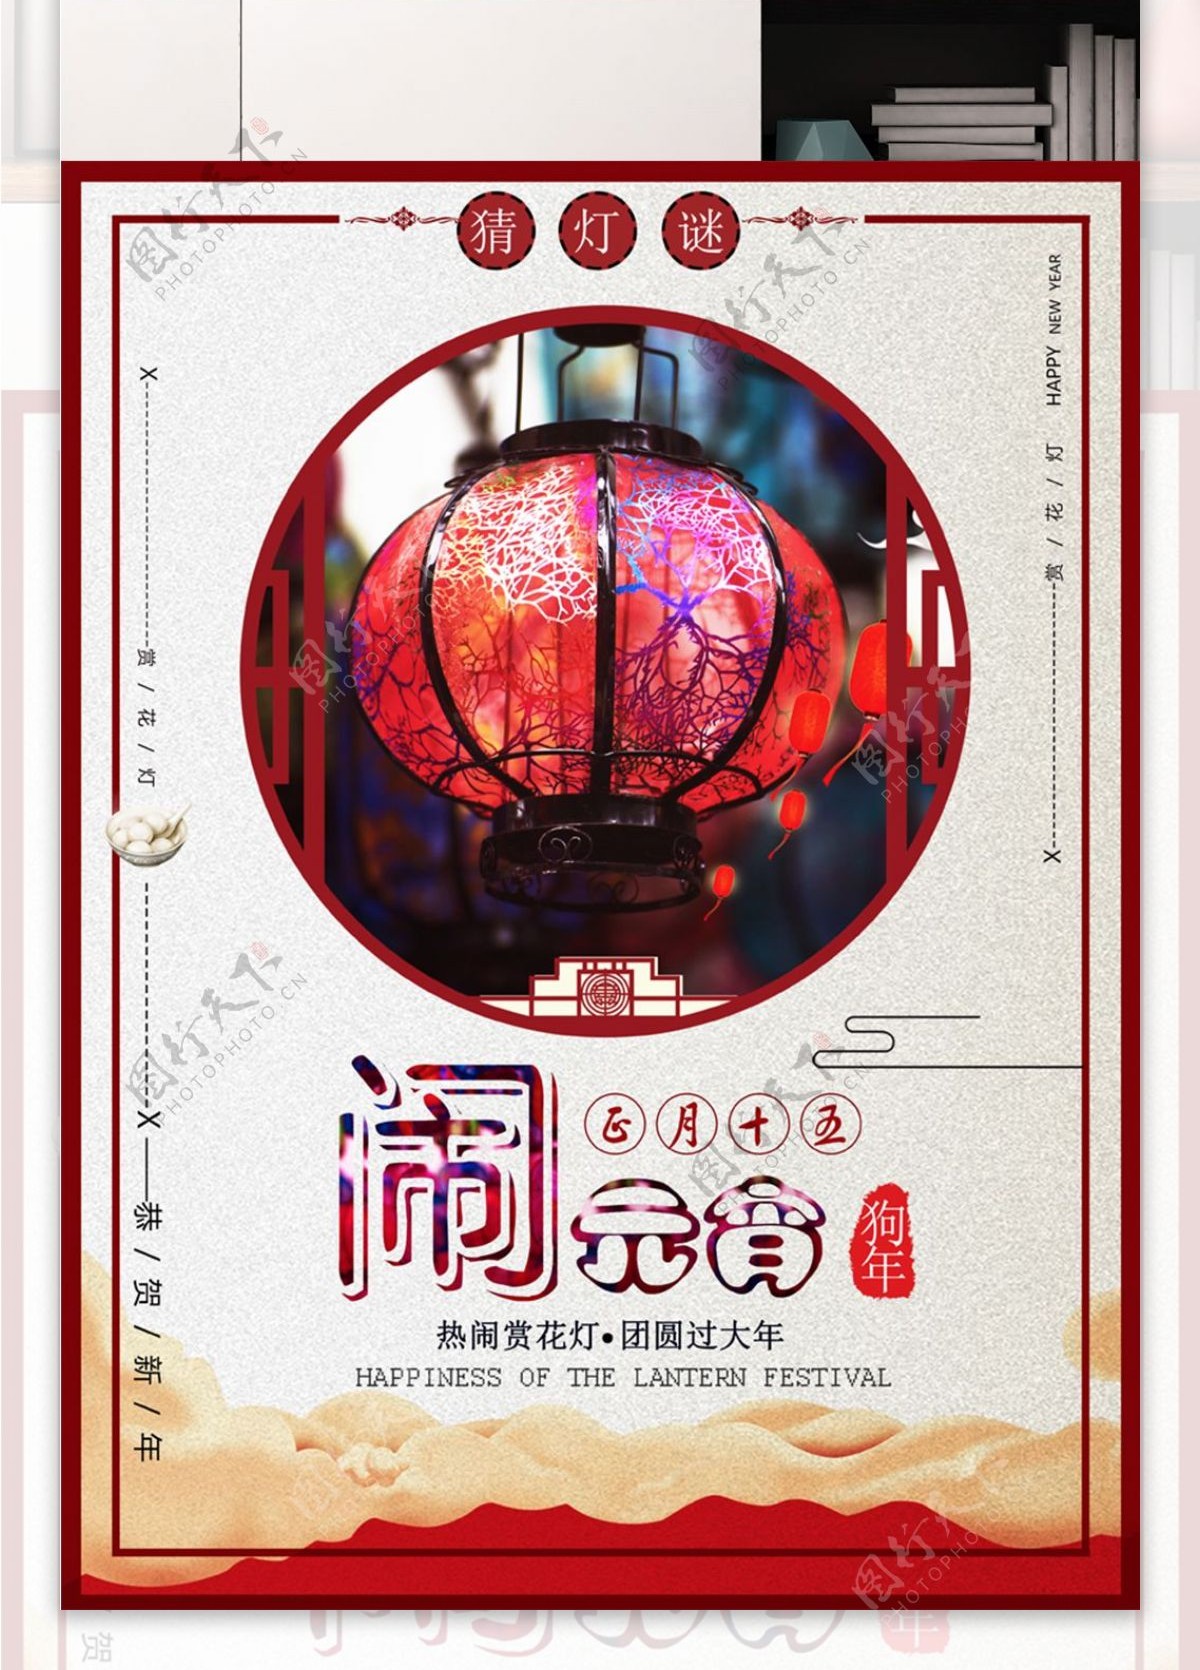 红色喜庆元宵节宣传海报